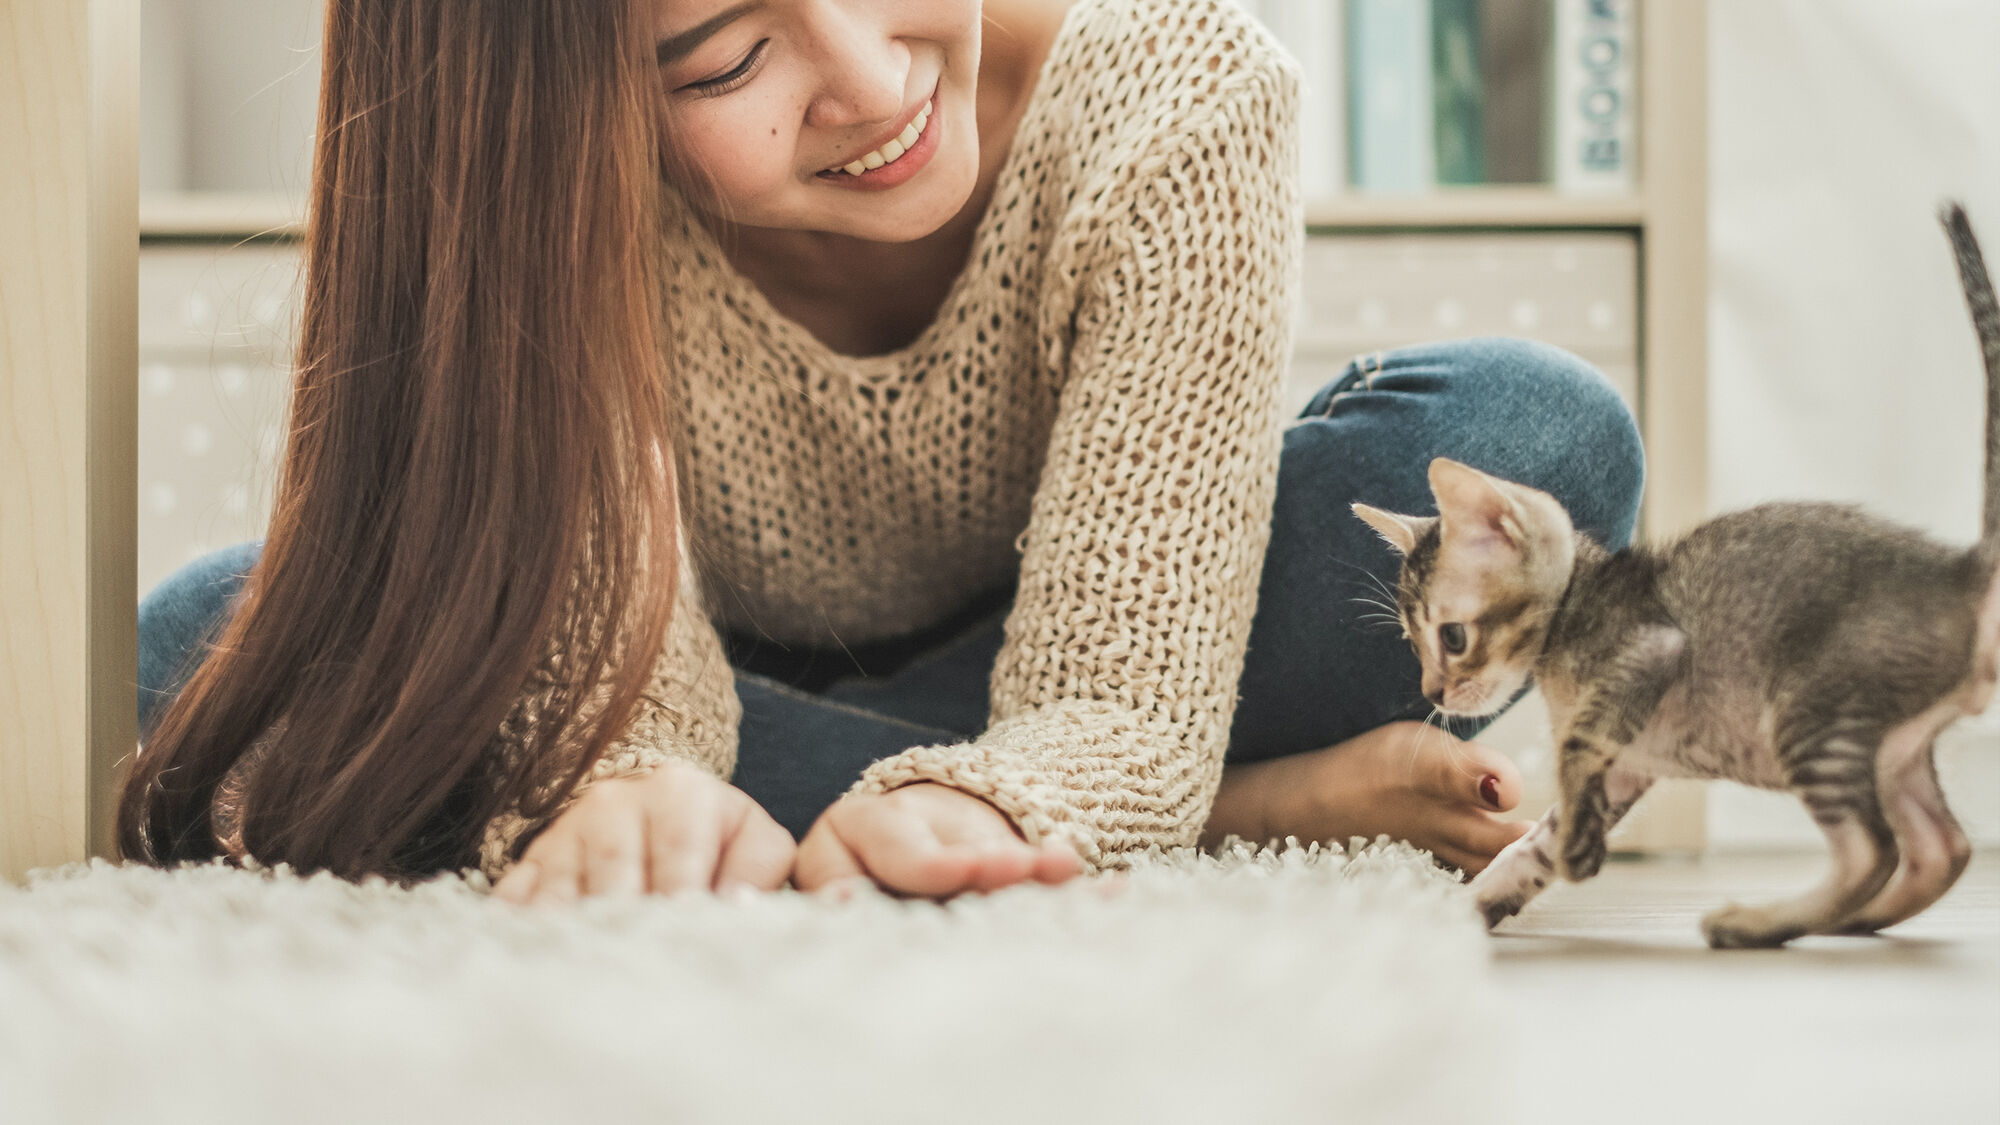 Een jonge kitten speelt binnenshuis met een vrouw op een wit tapijt